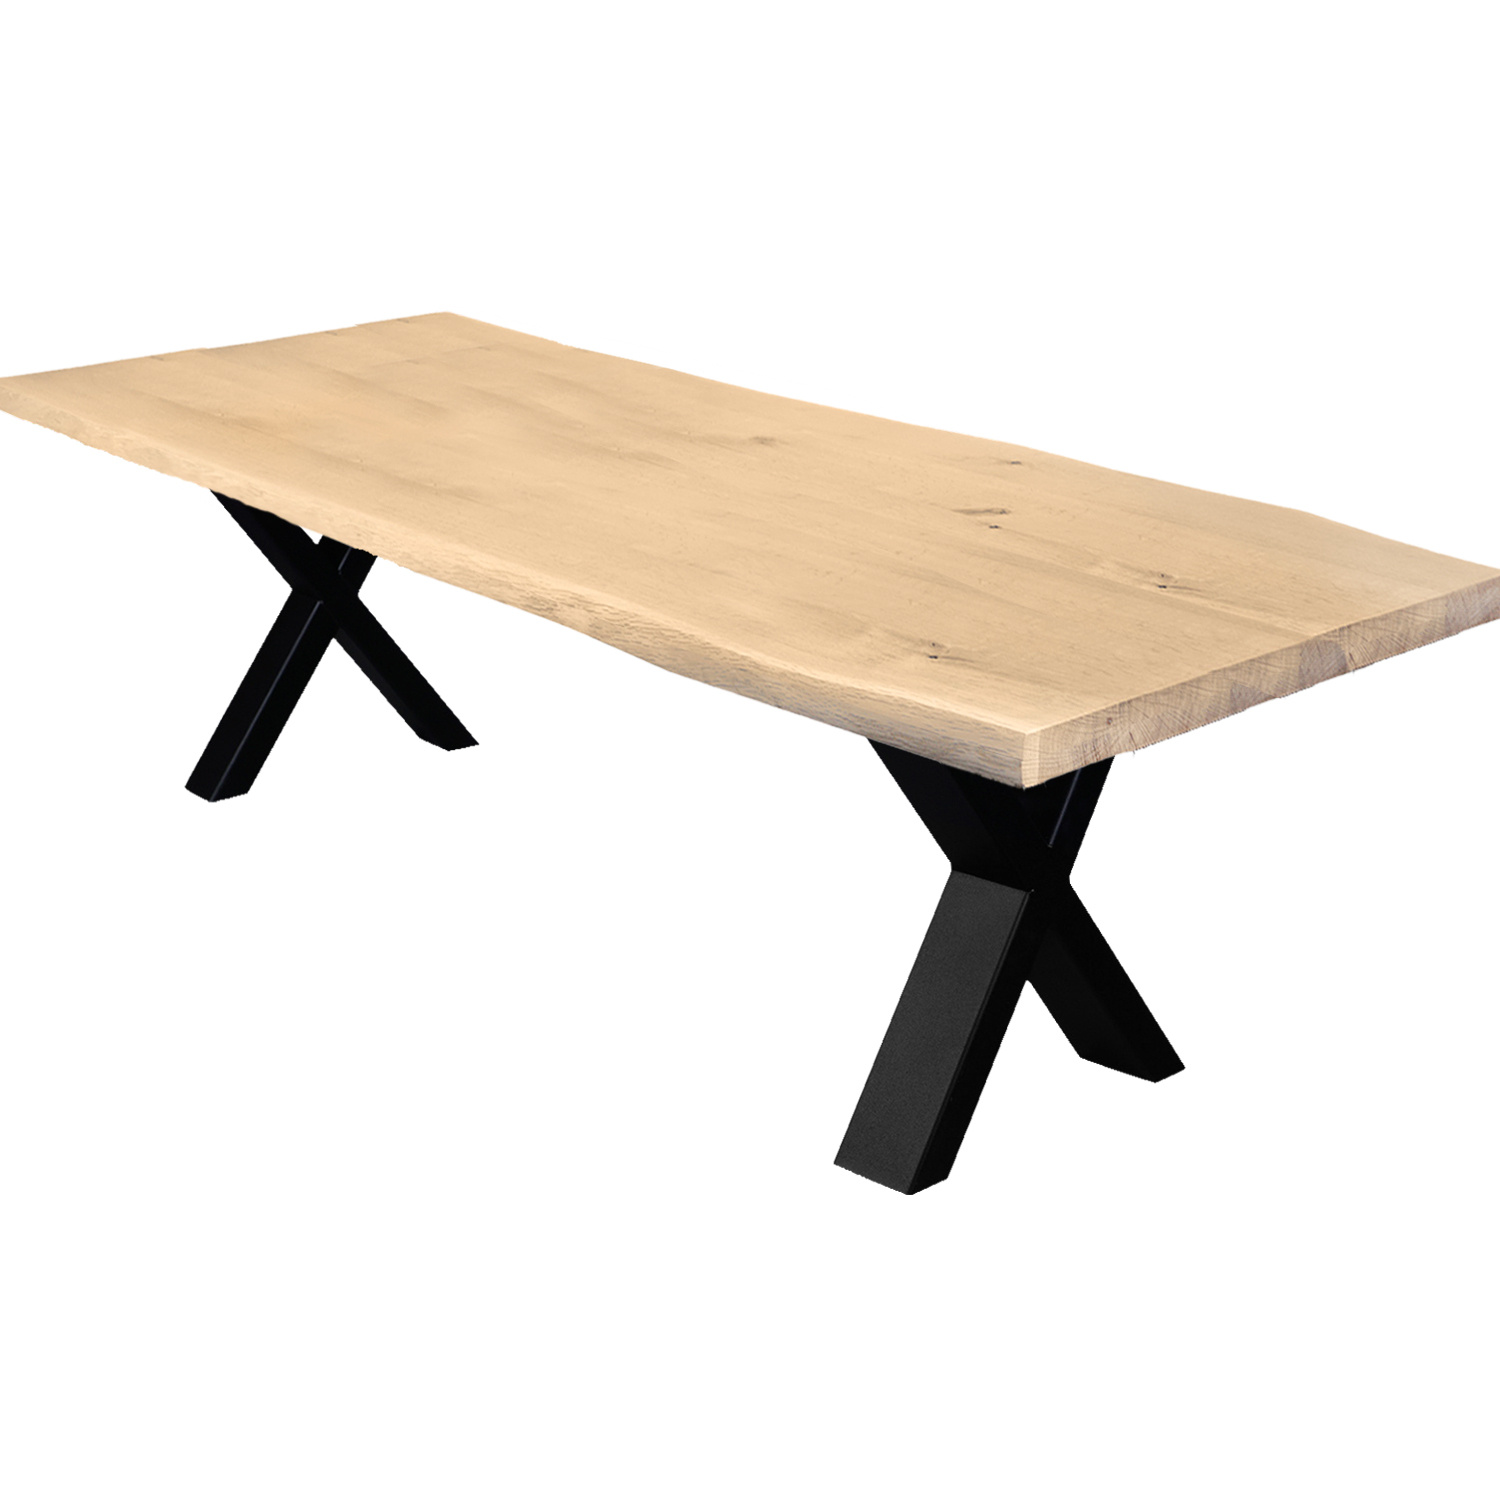  Tischplatte Eiche - mit Baumkante (Optik) - nach Maß - 4 cm dick - Eichenholz rustikal - Eiche Tischplatte massiv mit natürlichen Baumkant - verleimt & künstlich getrocknet (HF 8-12%) - 50-120x50-350 cm